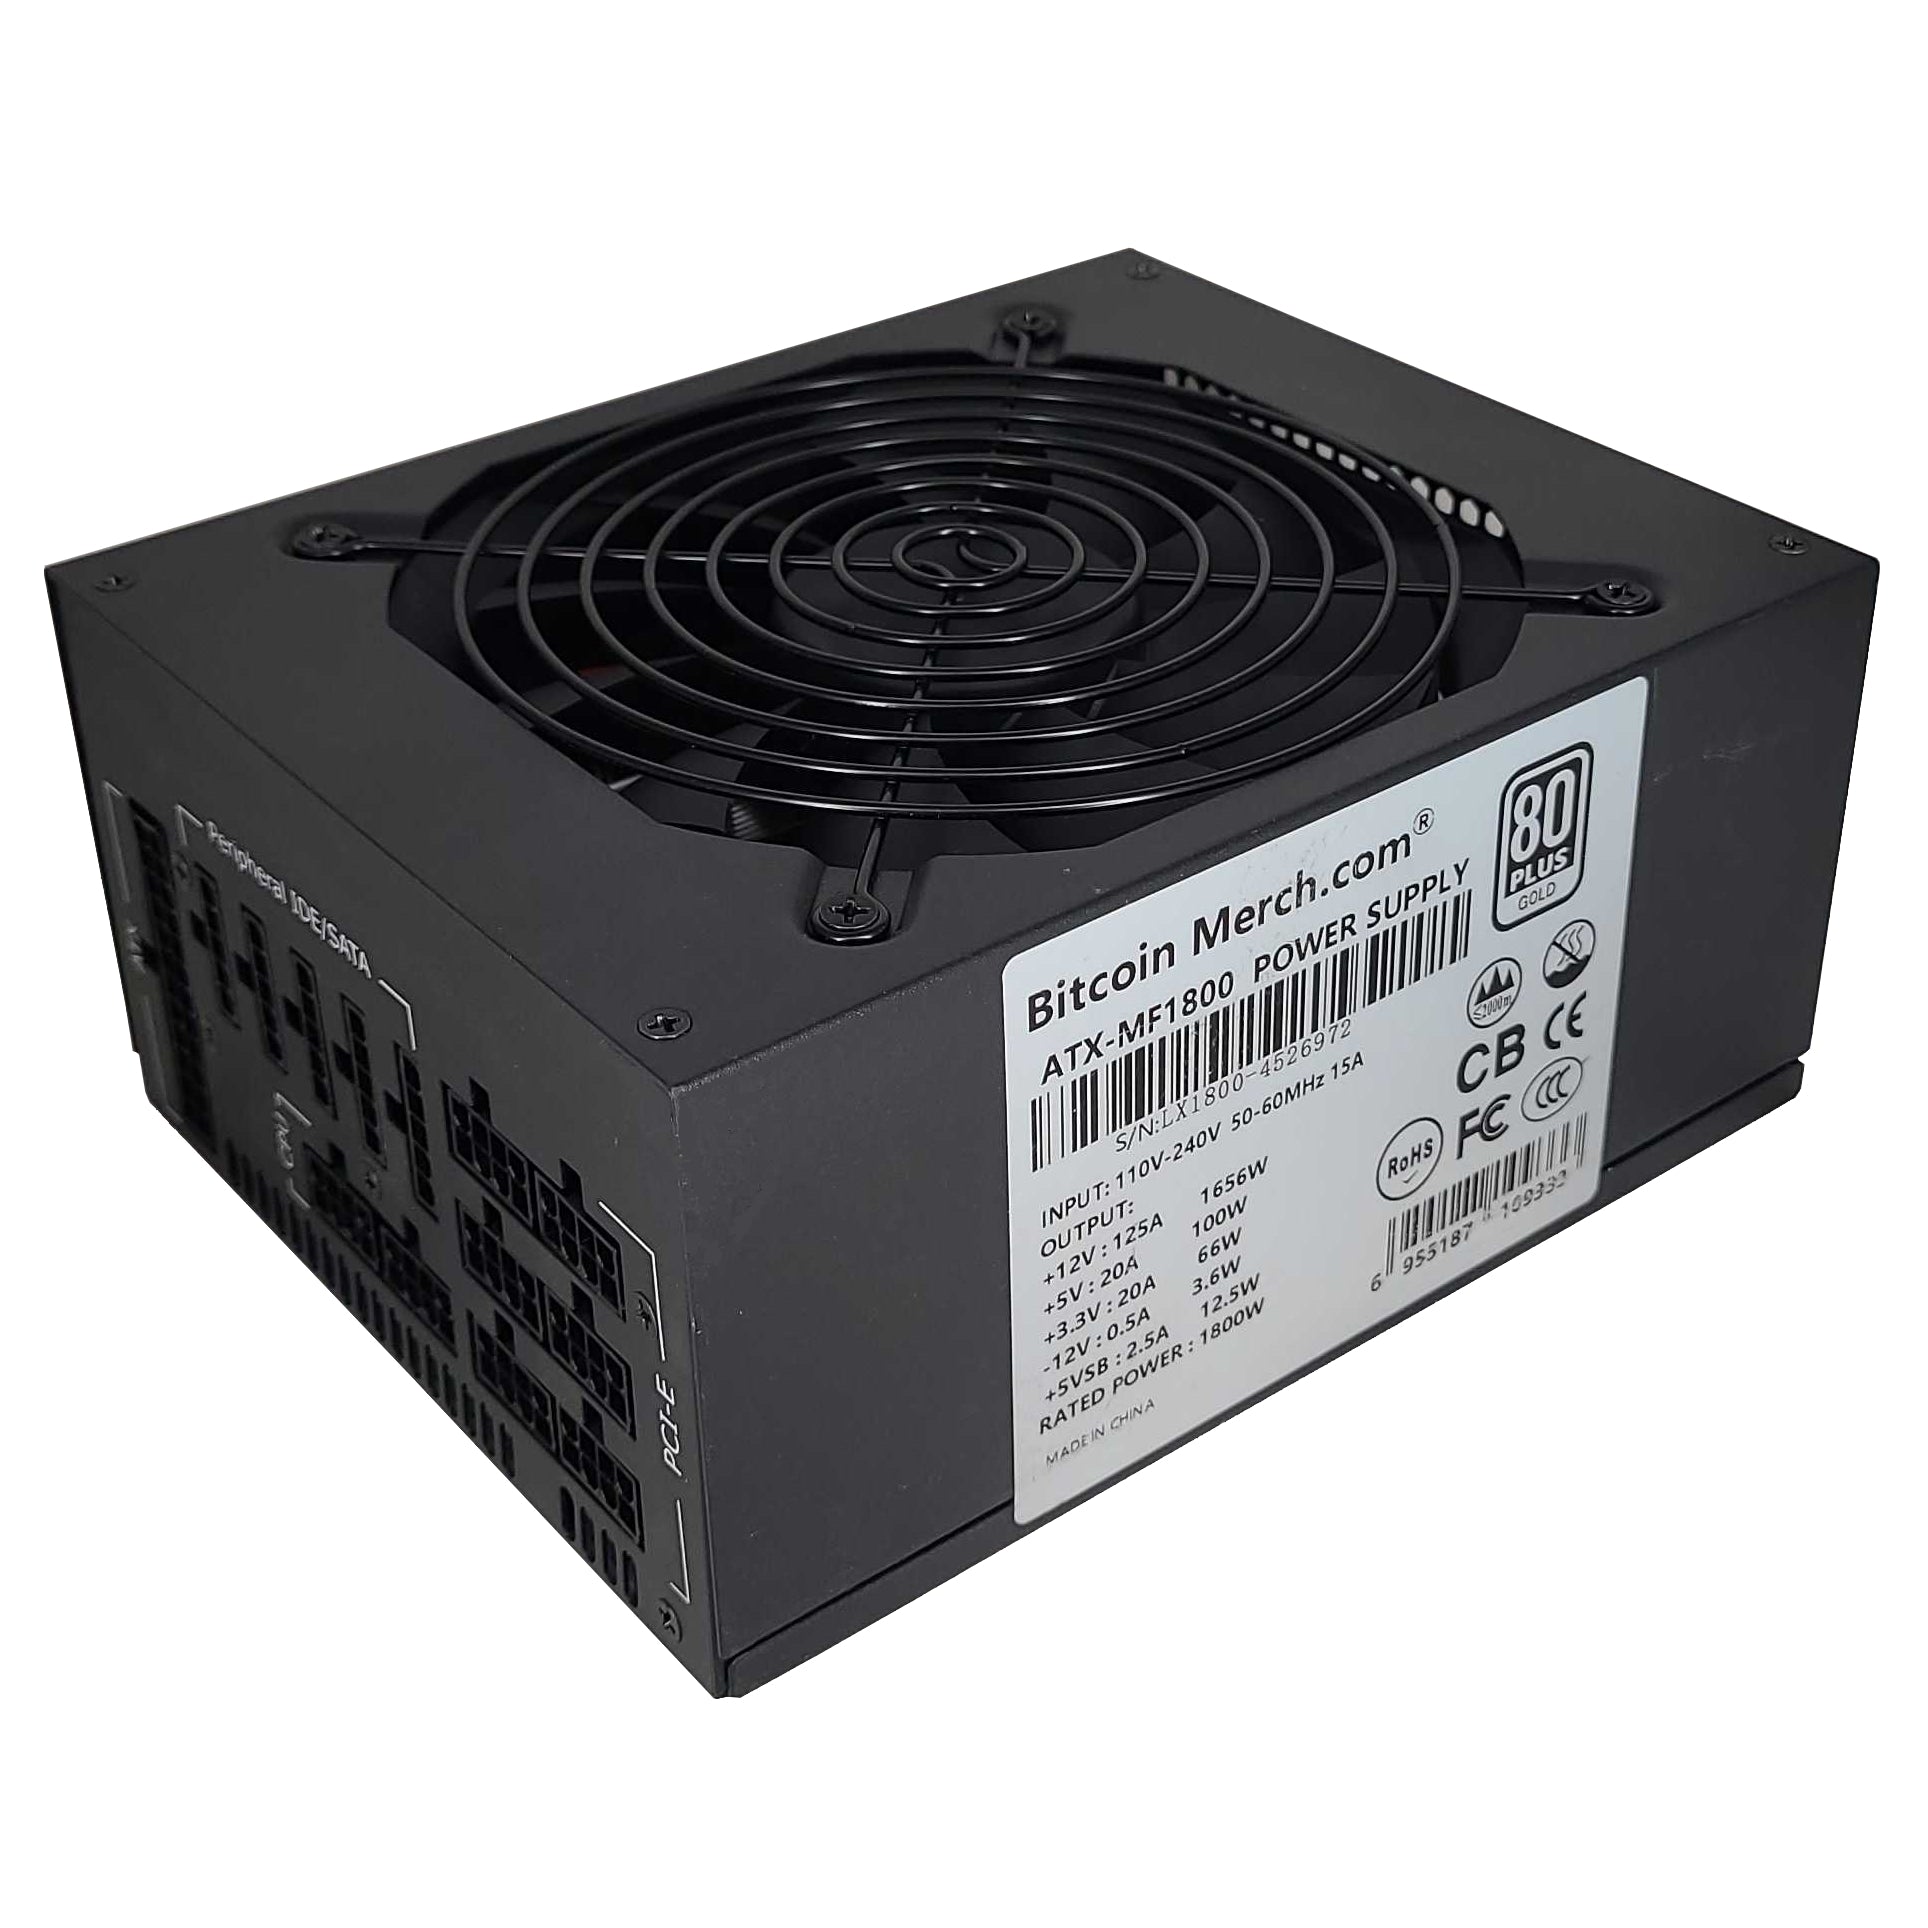 Zhansheng MAR5 17.2TH/s Bitcoin ASIC Miner + 220V Power Supply